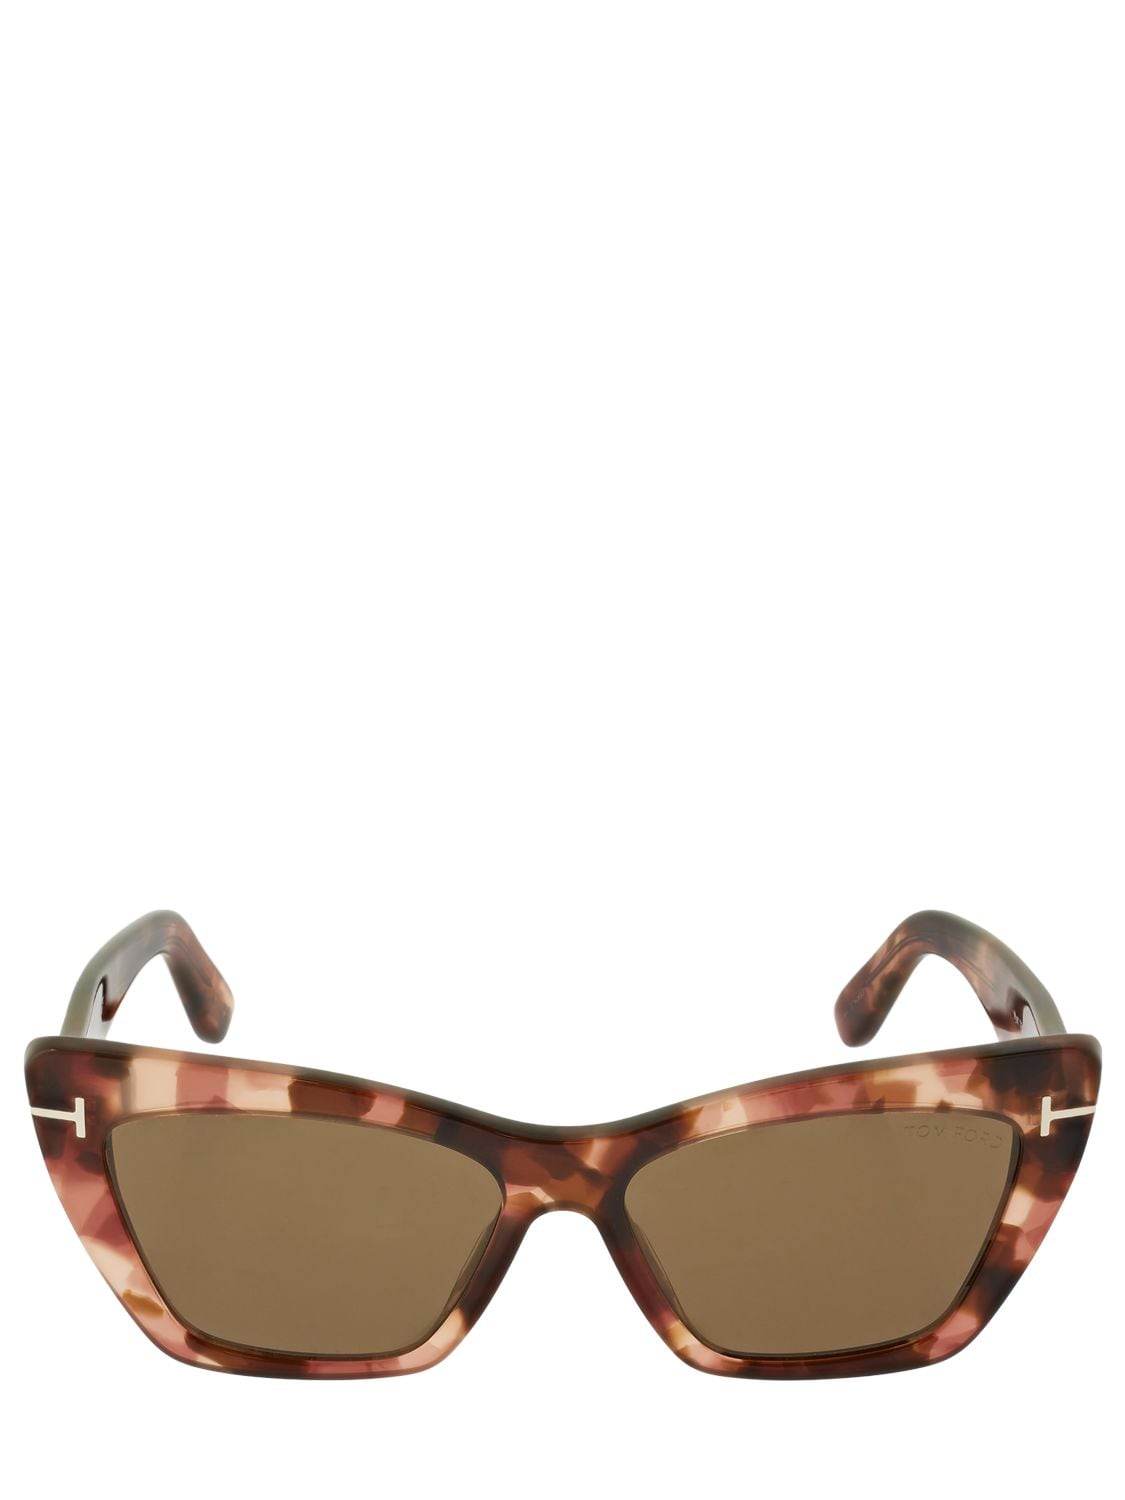 Wyatt Cat-eye Acetate Sunglasses Luisaviaroma Women Accessories Sunglasses Cat Eye Sunglasses 